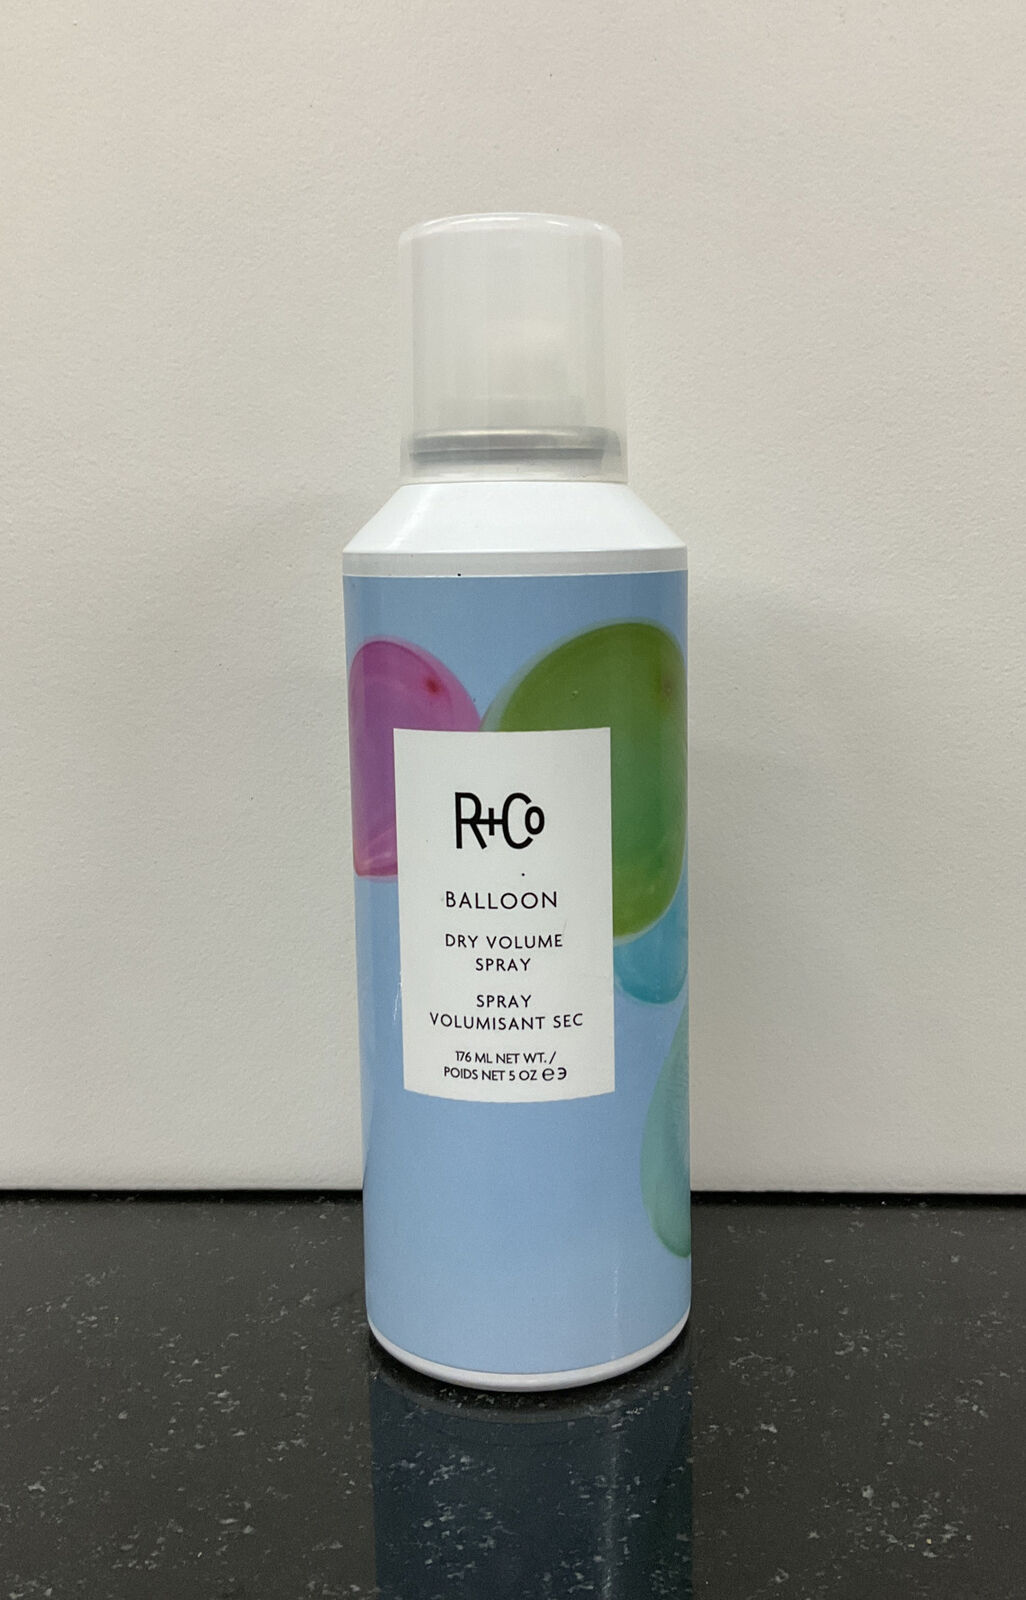 R+Co Balloon Dry Volume Spray 5oz/176ml as pictured